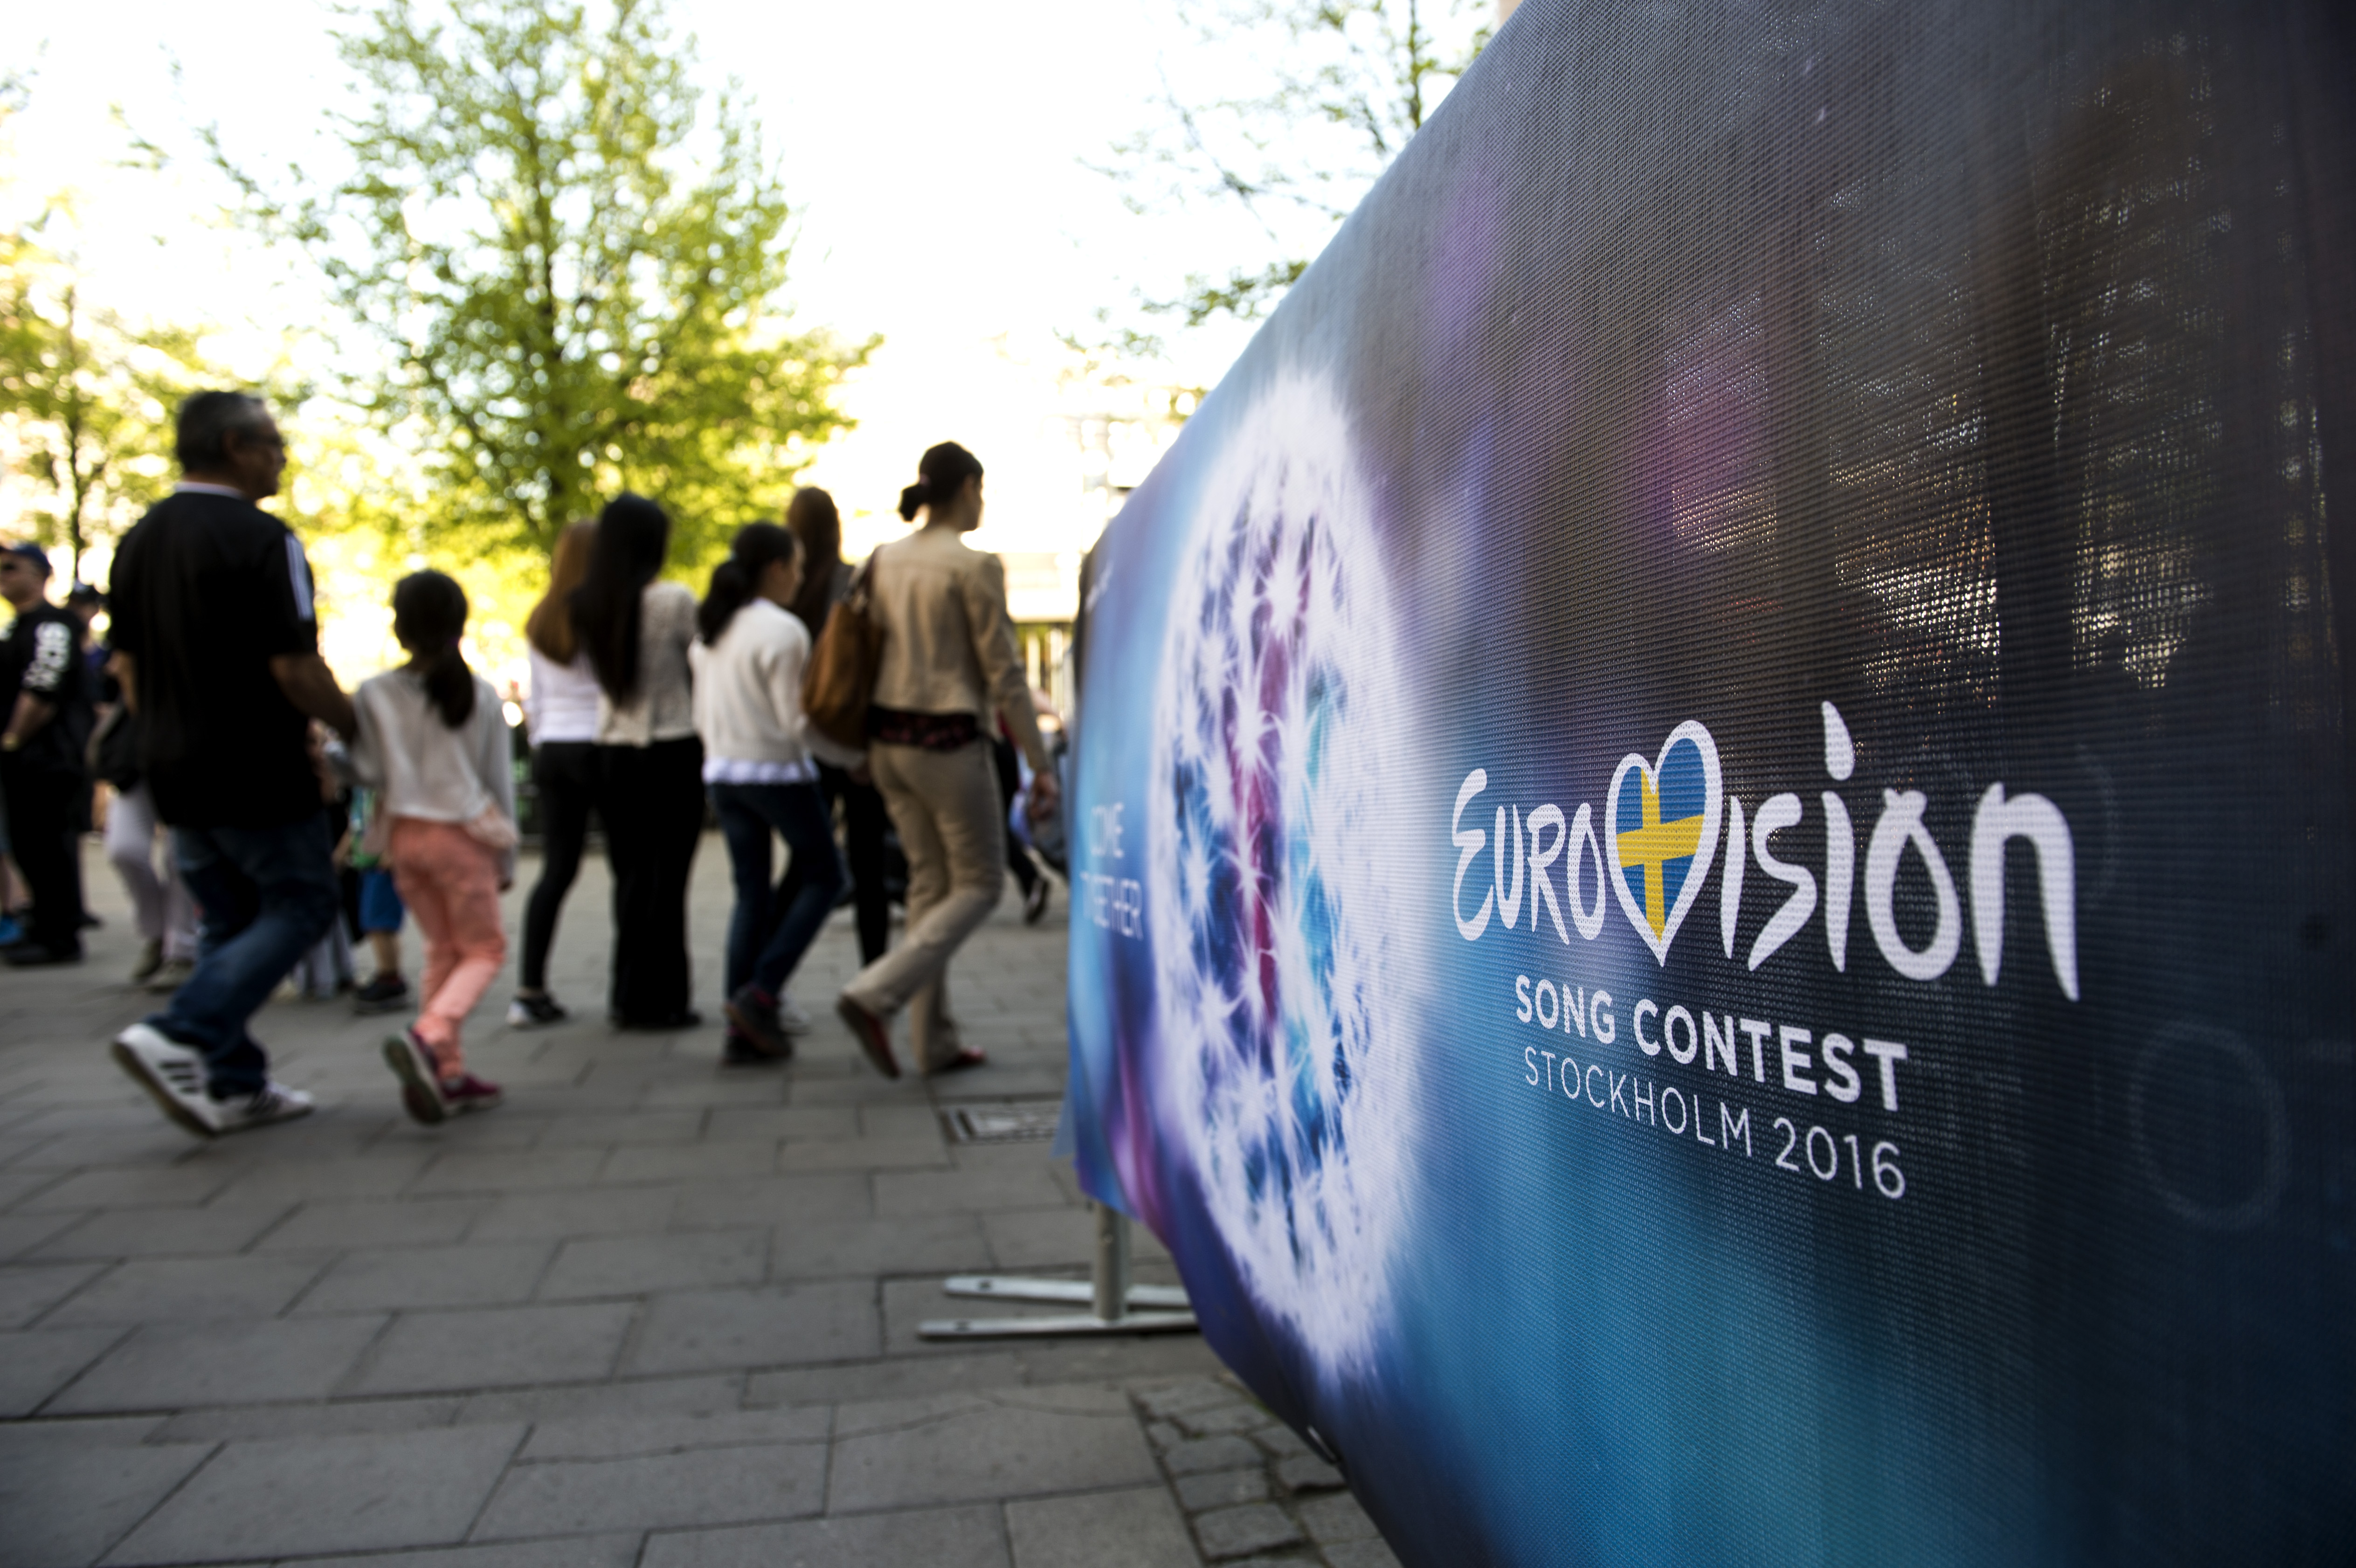 "För mig har Eurovision stått för europeisk sammanhållning, starkare band över gränserna, kulturer som förenar. Men tydligen har minoriteterna blivit en nagel i ögat på schlagerbyråkraterna".